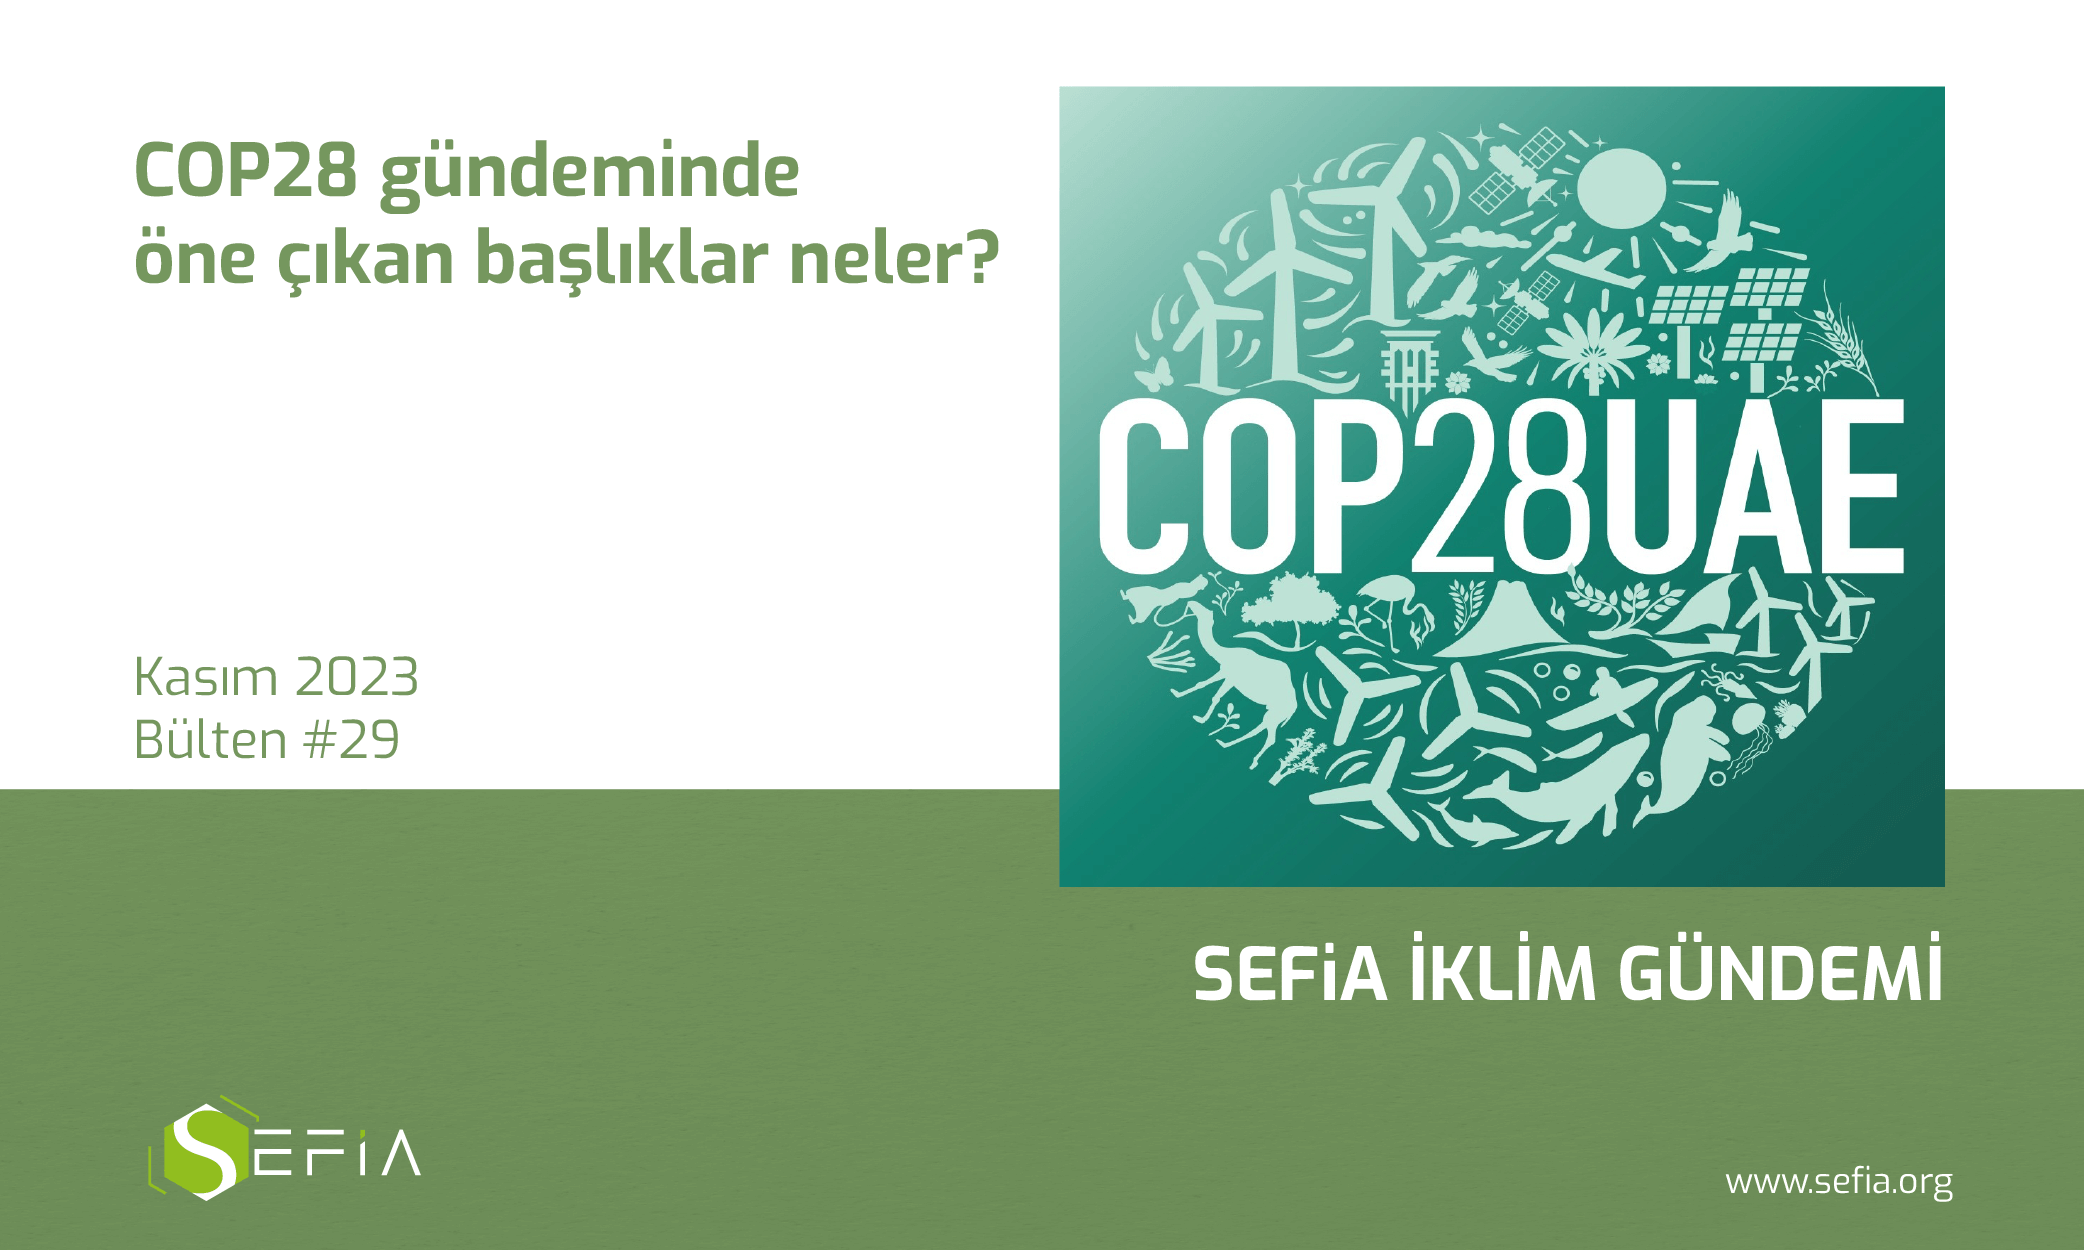 SEFiA İklim Gündemi #29: COP28 gündeminde öne çıkan başlıklar neler?